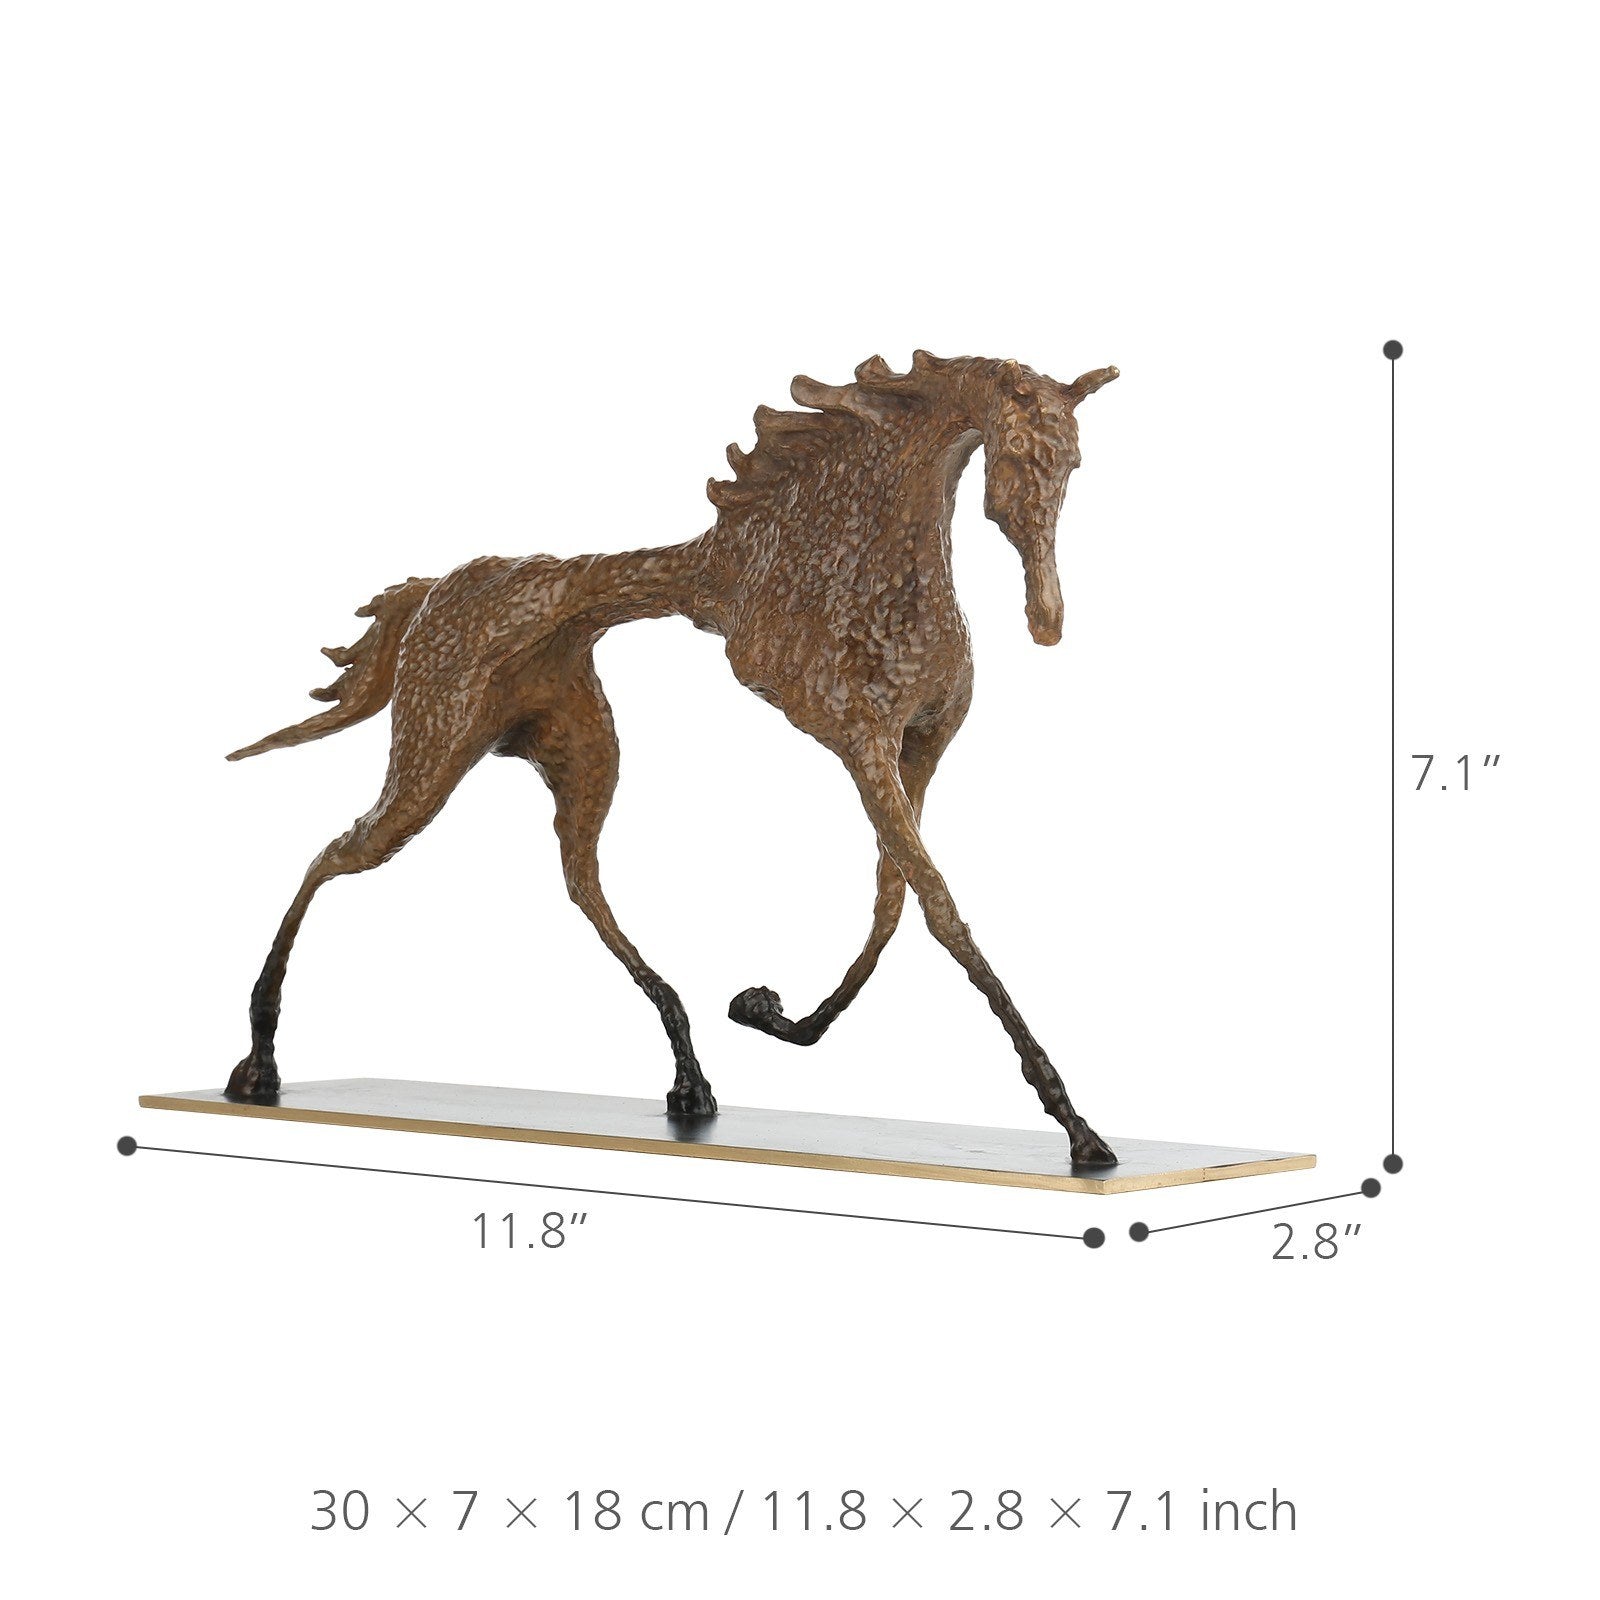 Giacometti Sculpture Horse